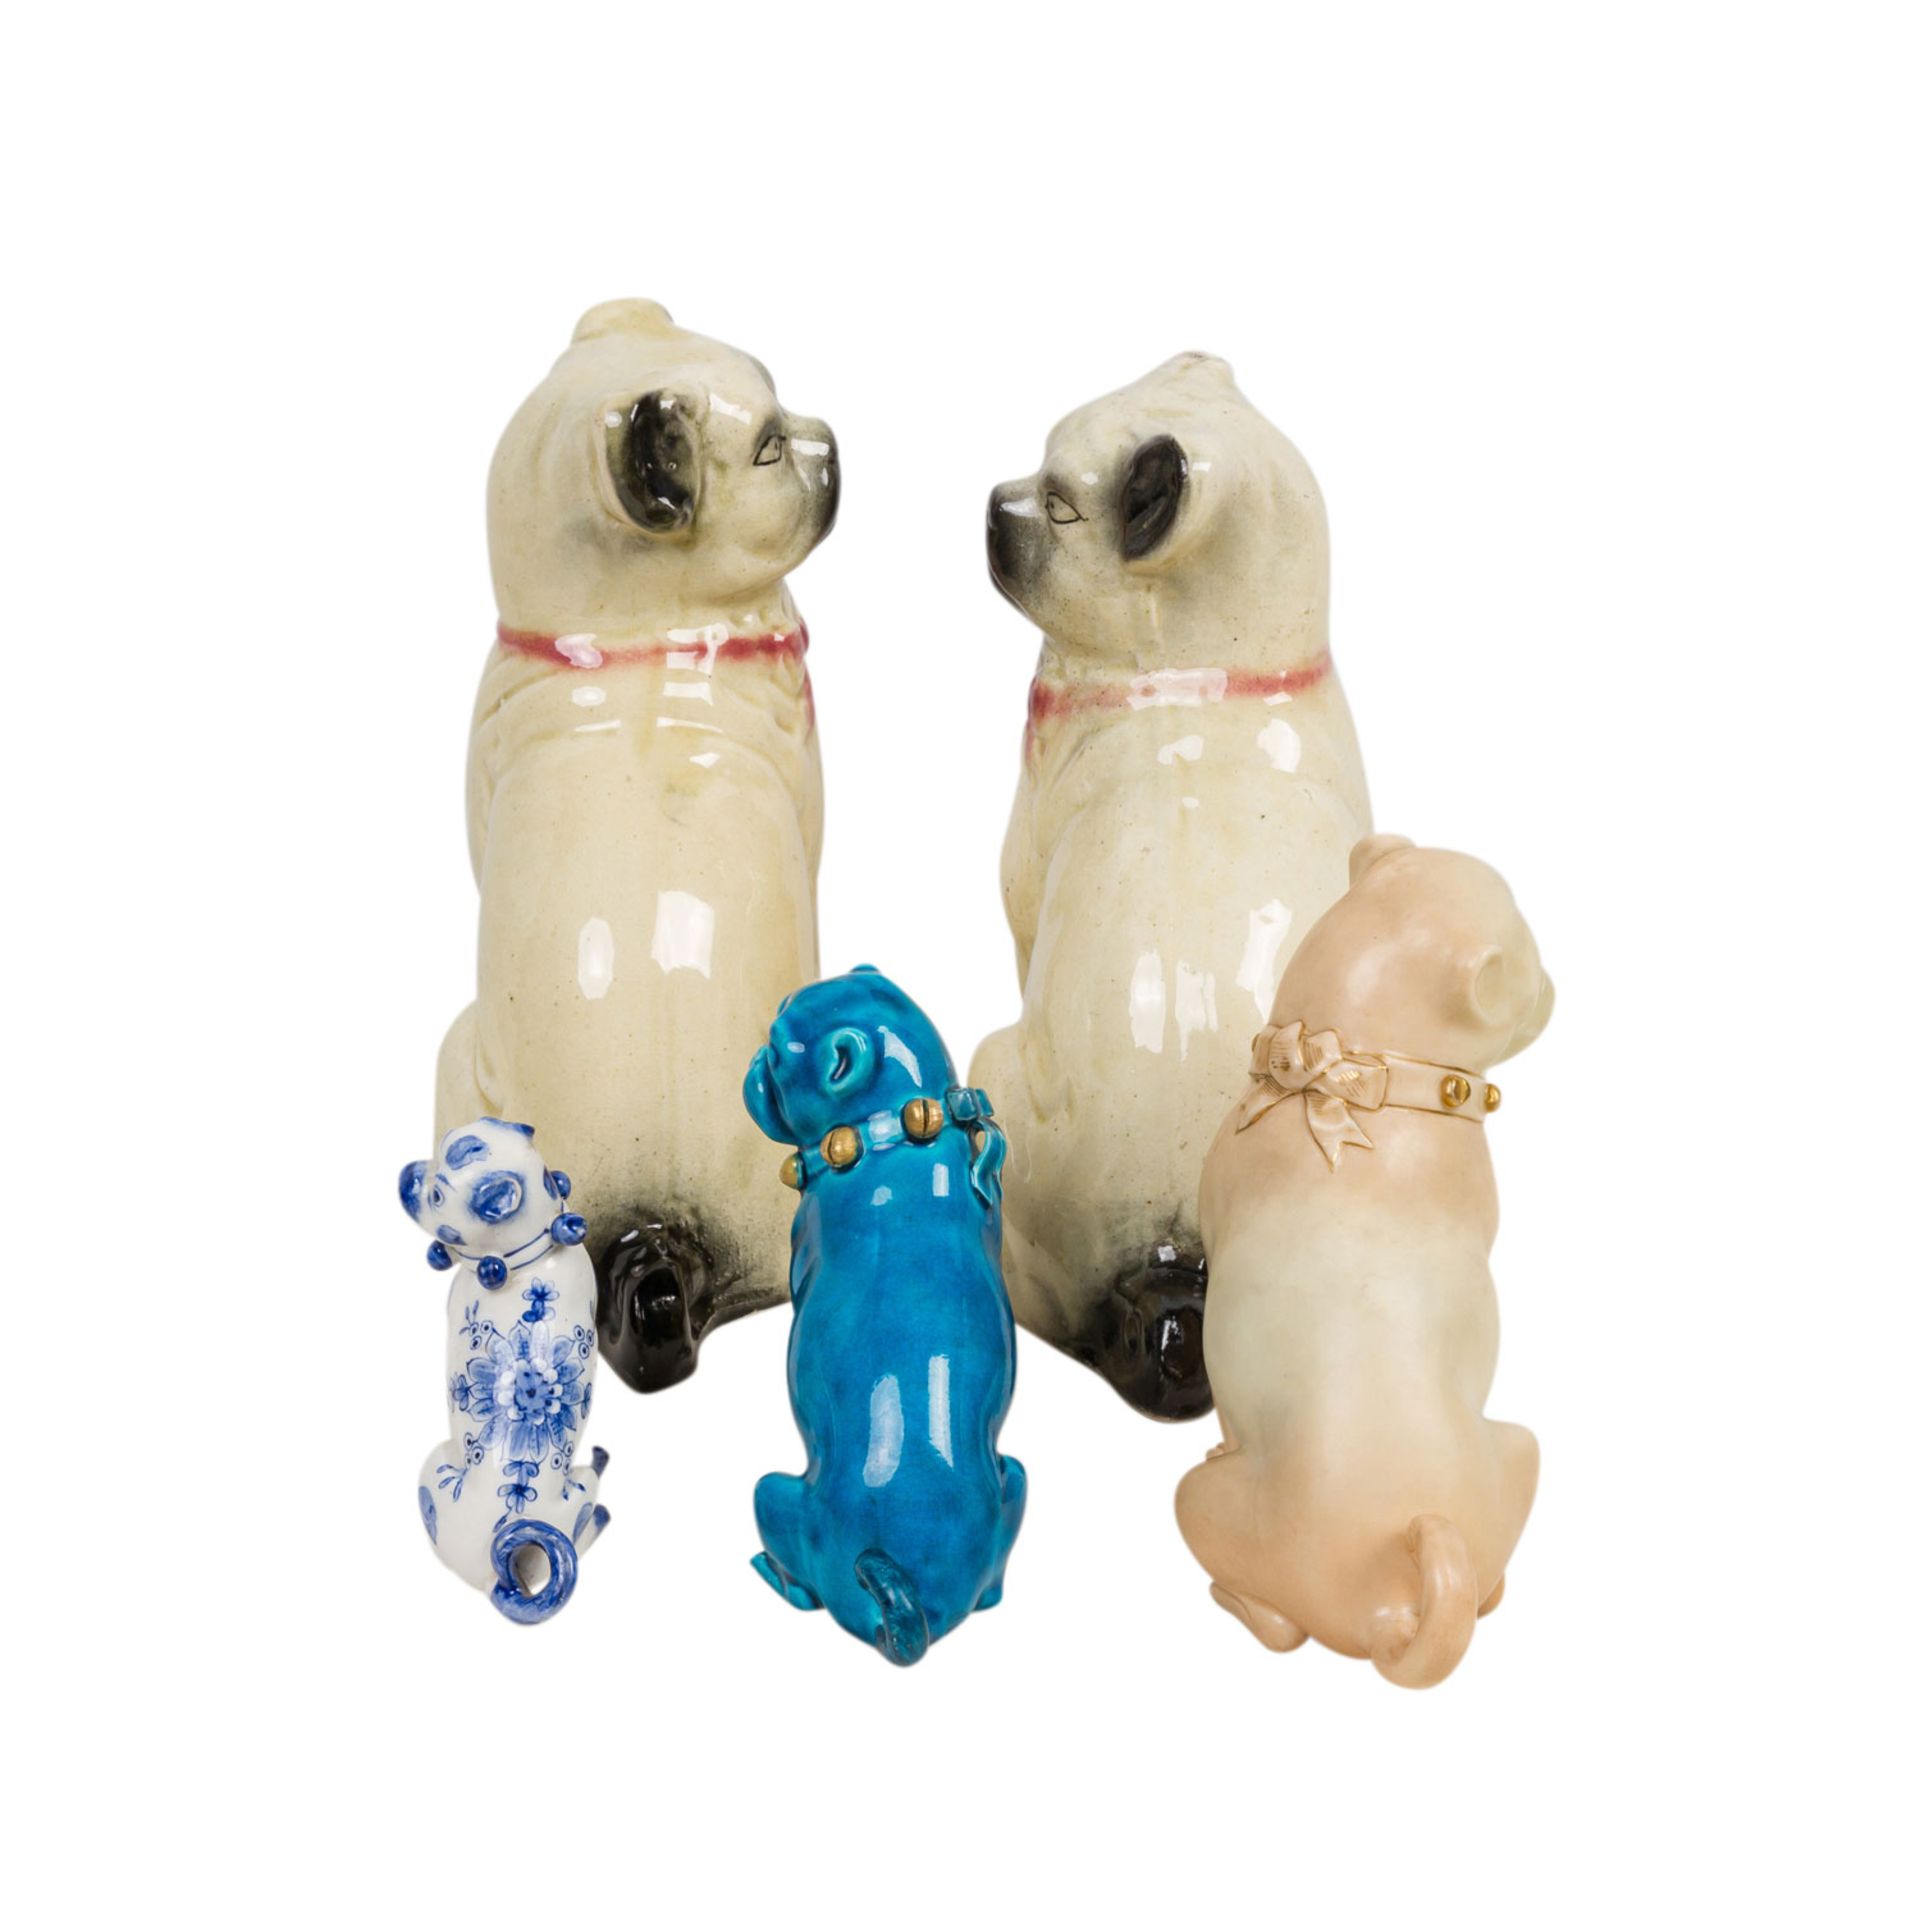 5tlg. Konvolut Mops-Hunde, 20. Jh.Bestehend aus 3 sitzenden Mops-Hunden mit Schellenhalsband in - Bild 3 aus 3